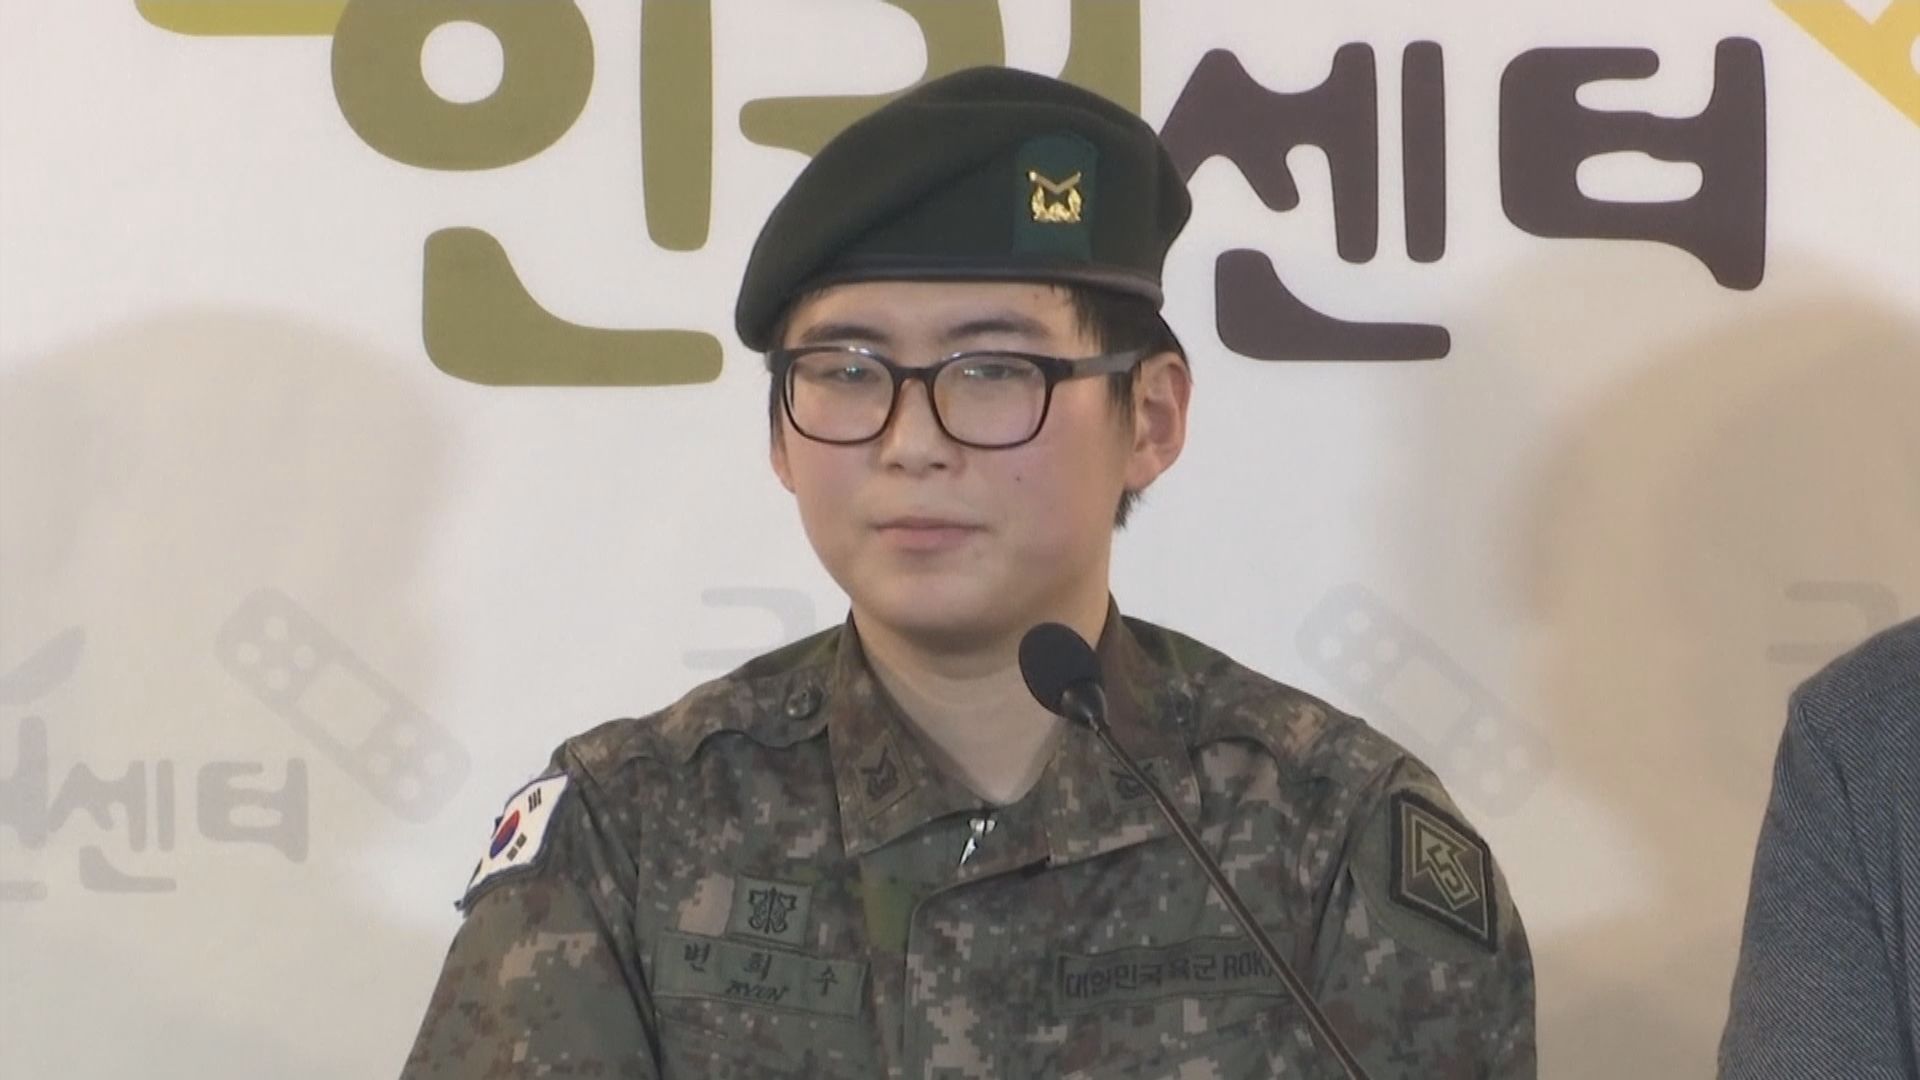 【環球薈報】南韓法院裁定軍方強制變性軍人退役敗訴